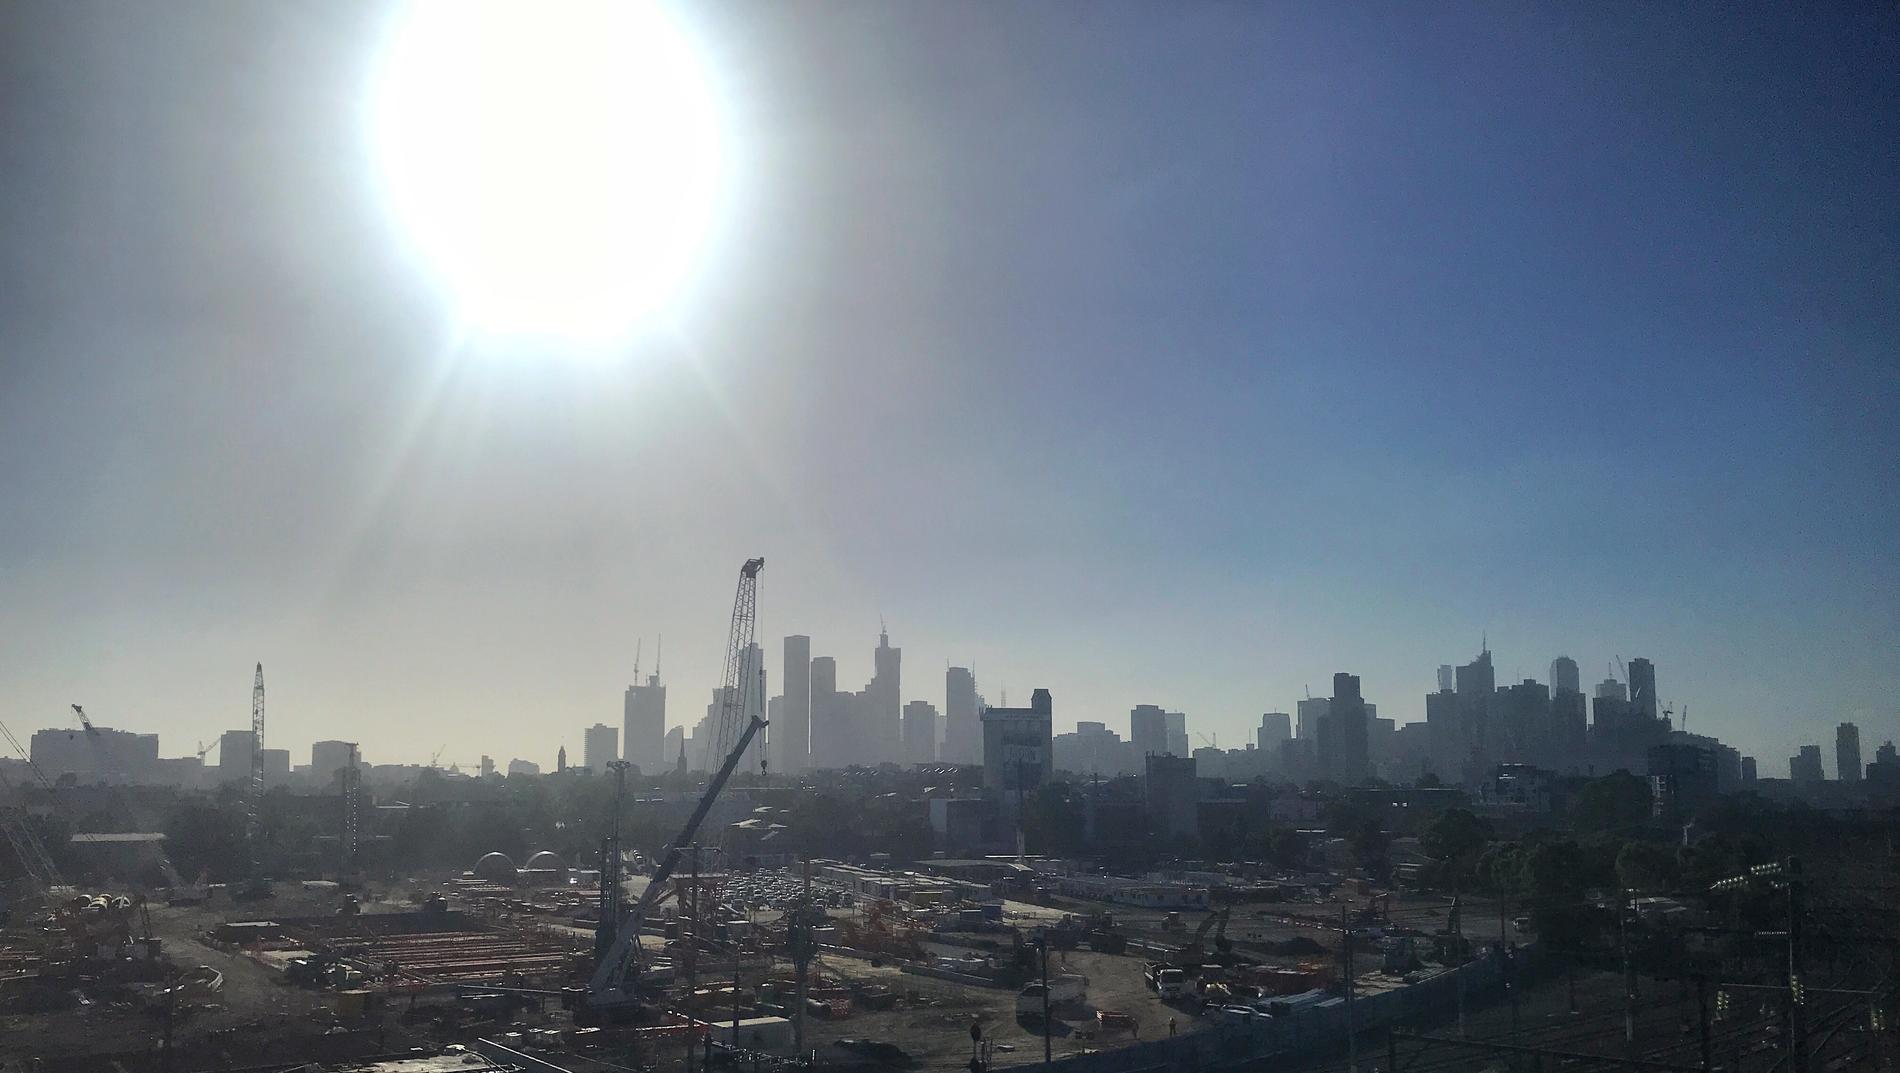 Melbourne steks under den heta solen.